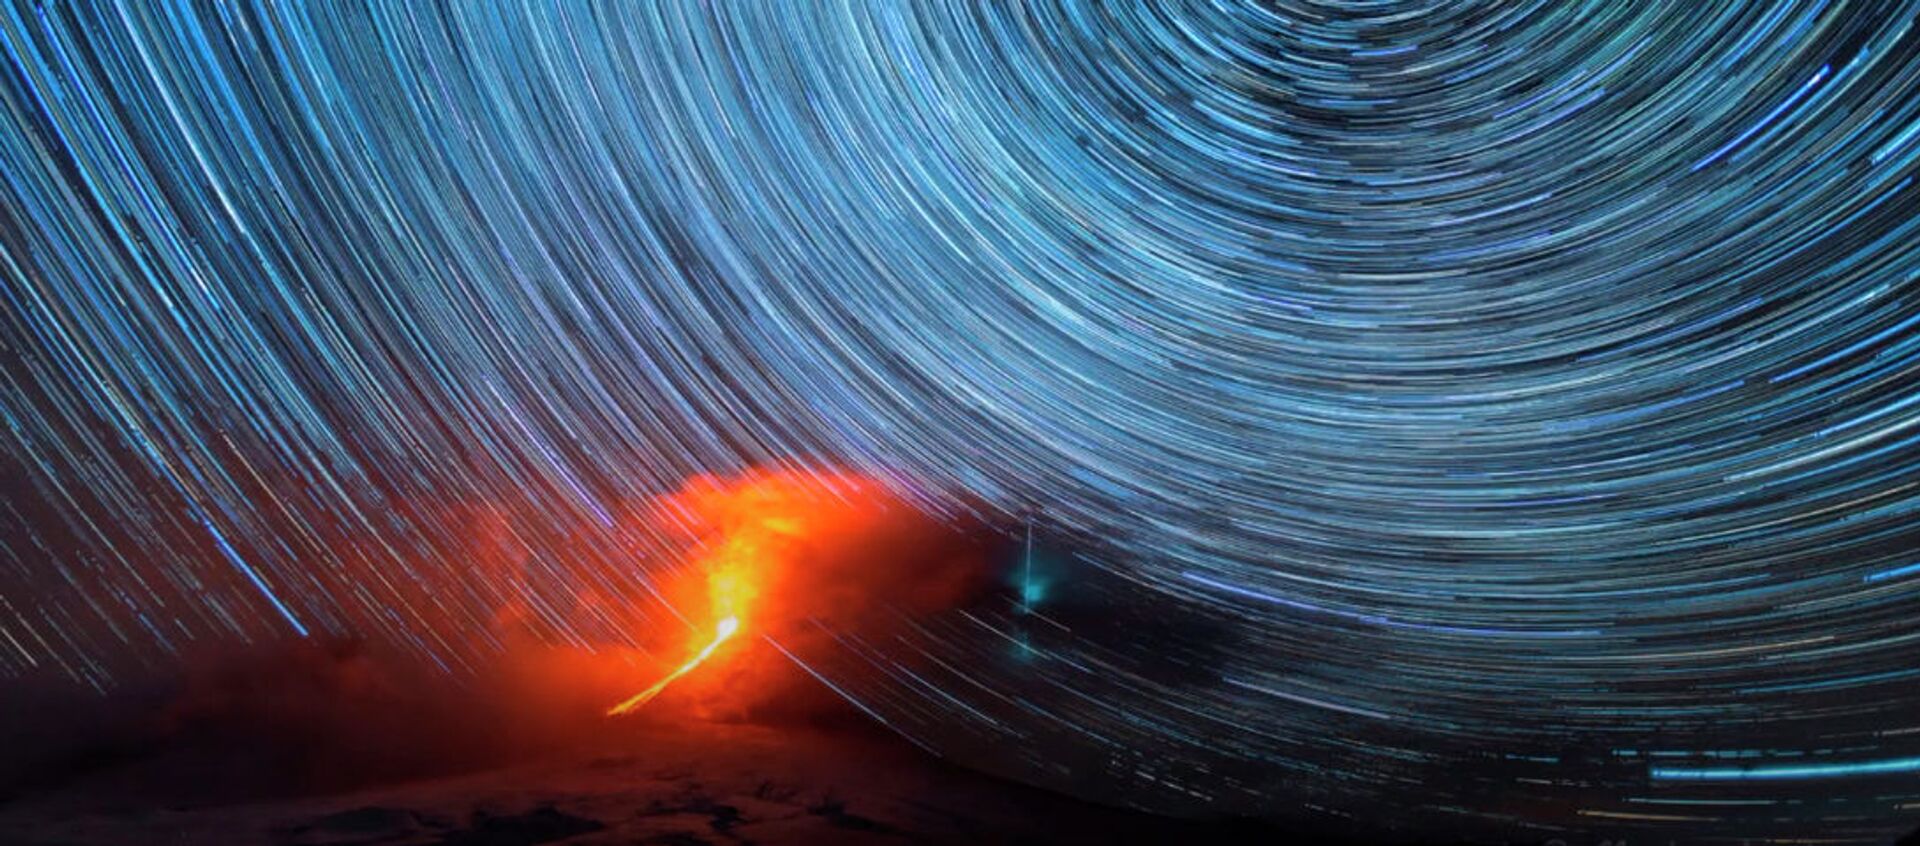 Вспышки метеора над извергающимся вулканом — красивое таймлапс-видео - Sputnik Кыргызстан, 1920, 29.11.2020